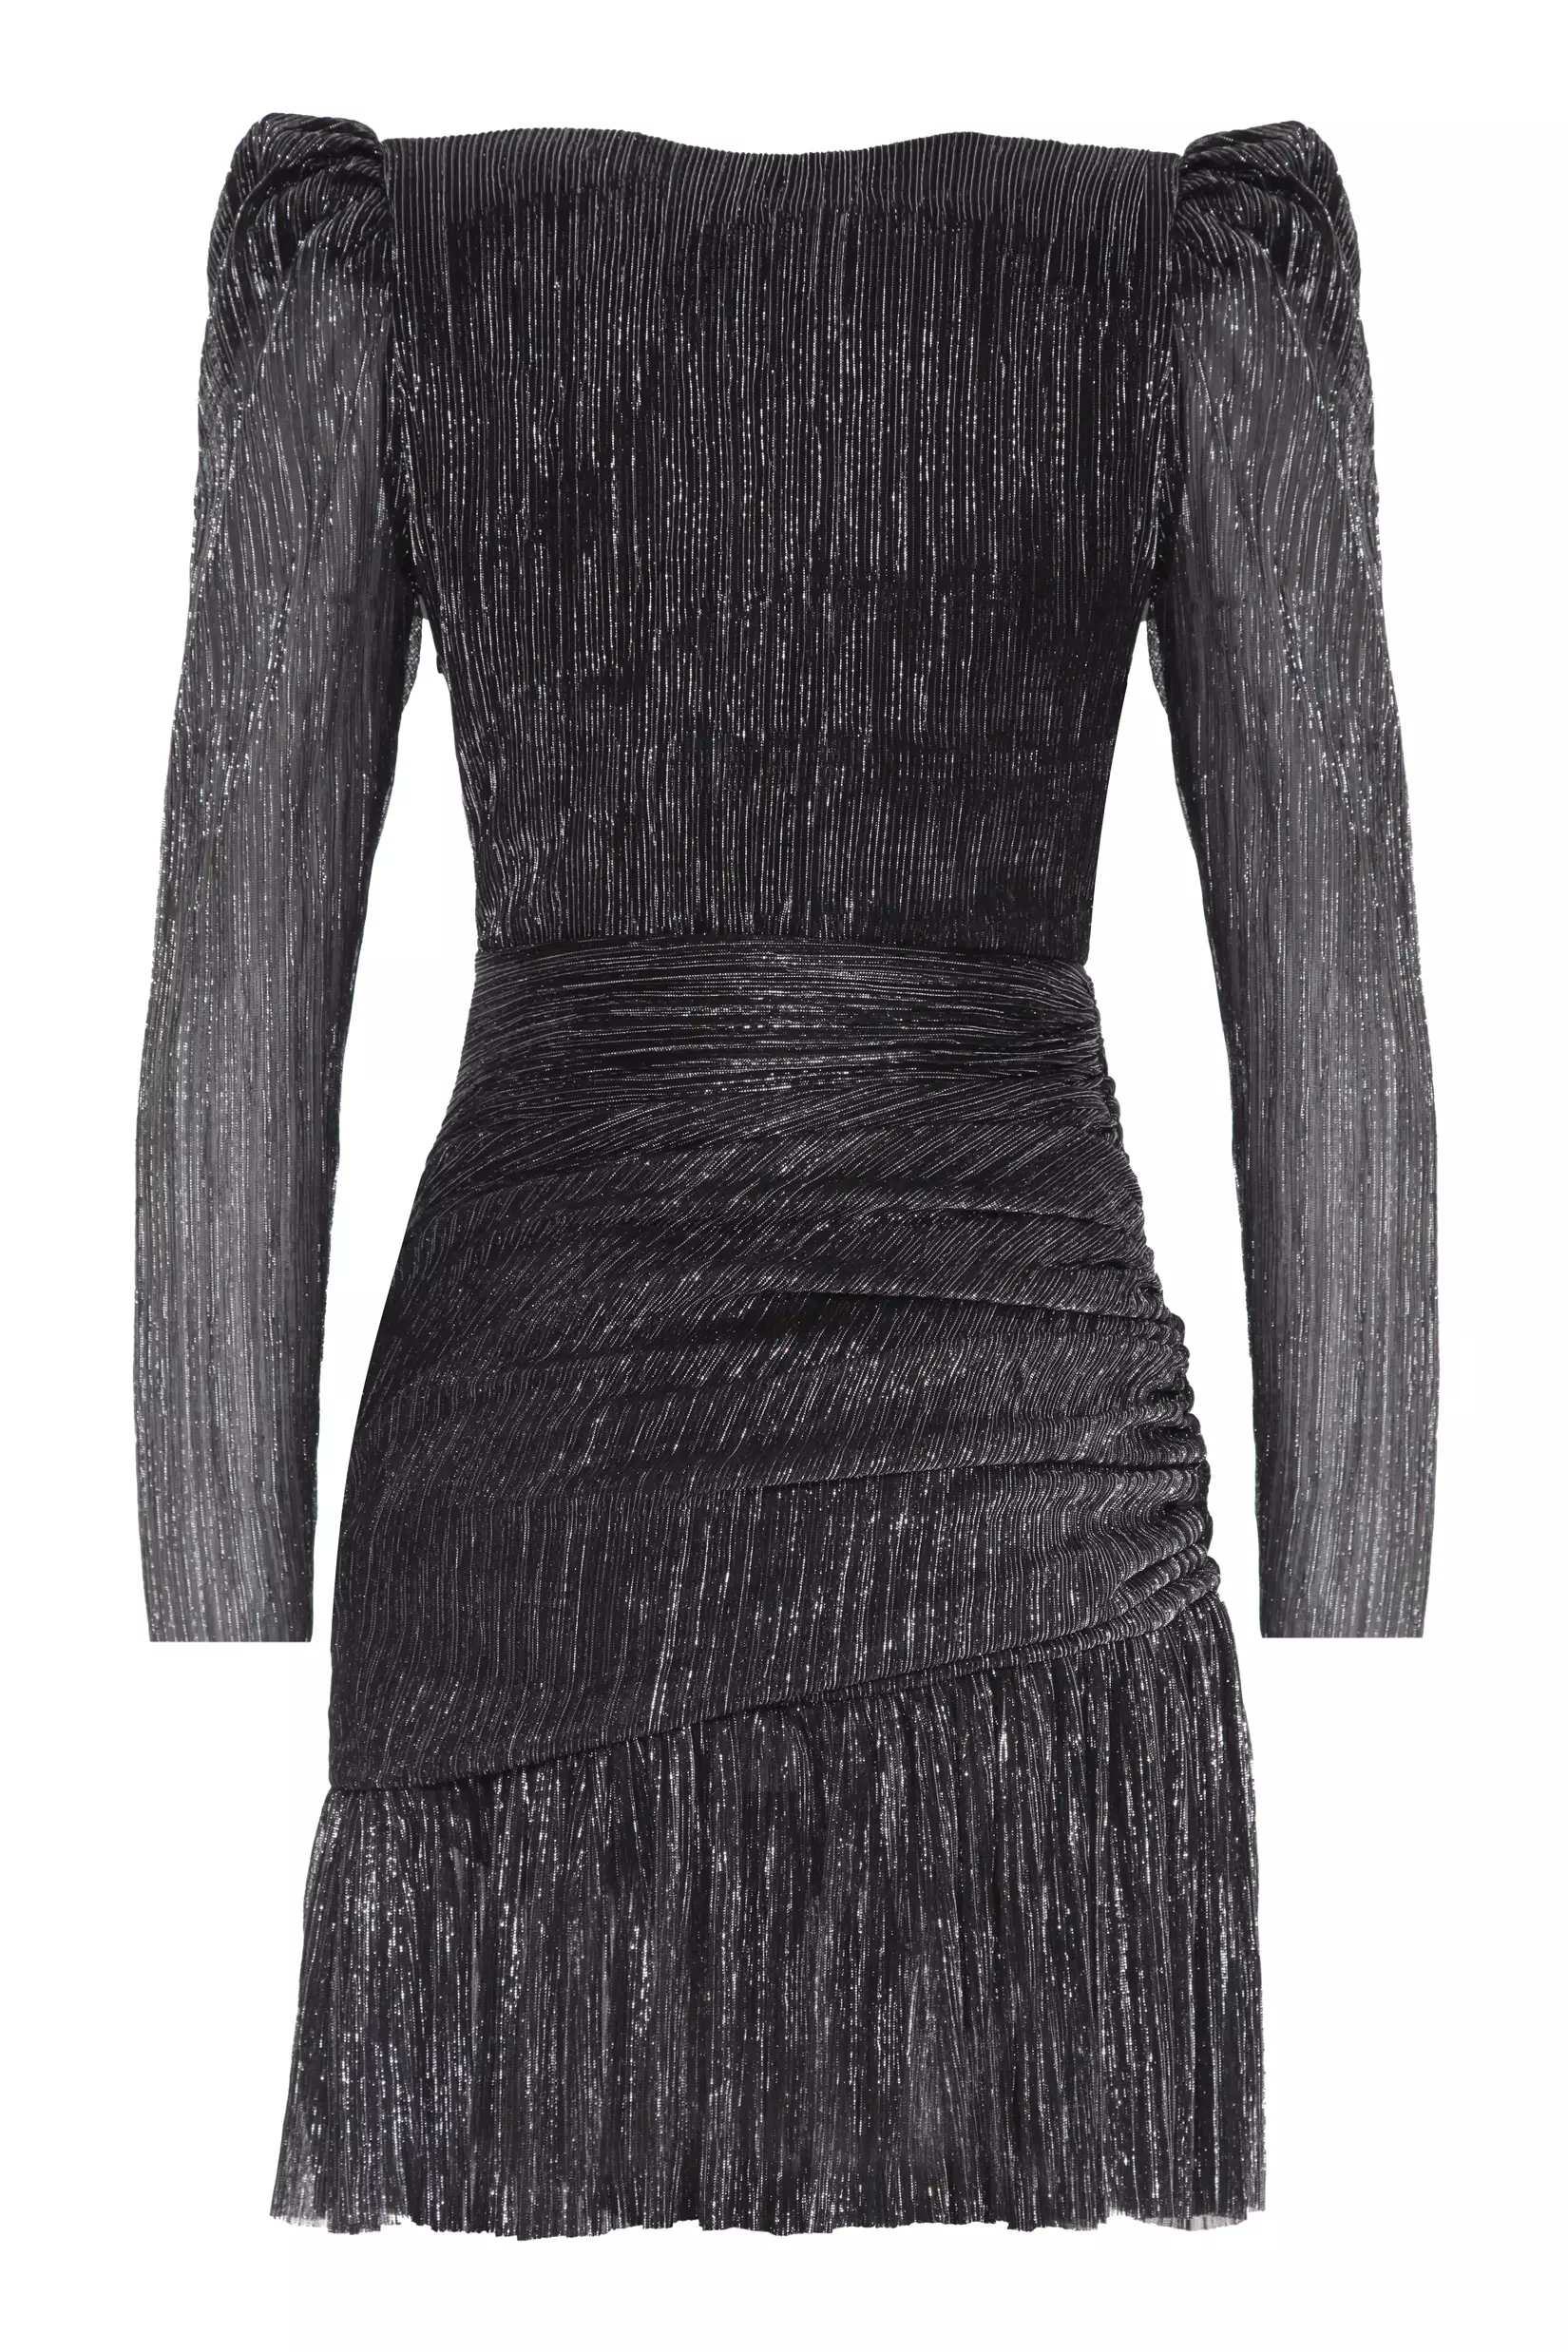 Siyah gümüş sparky long sleeve mini dress